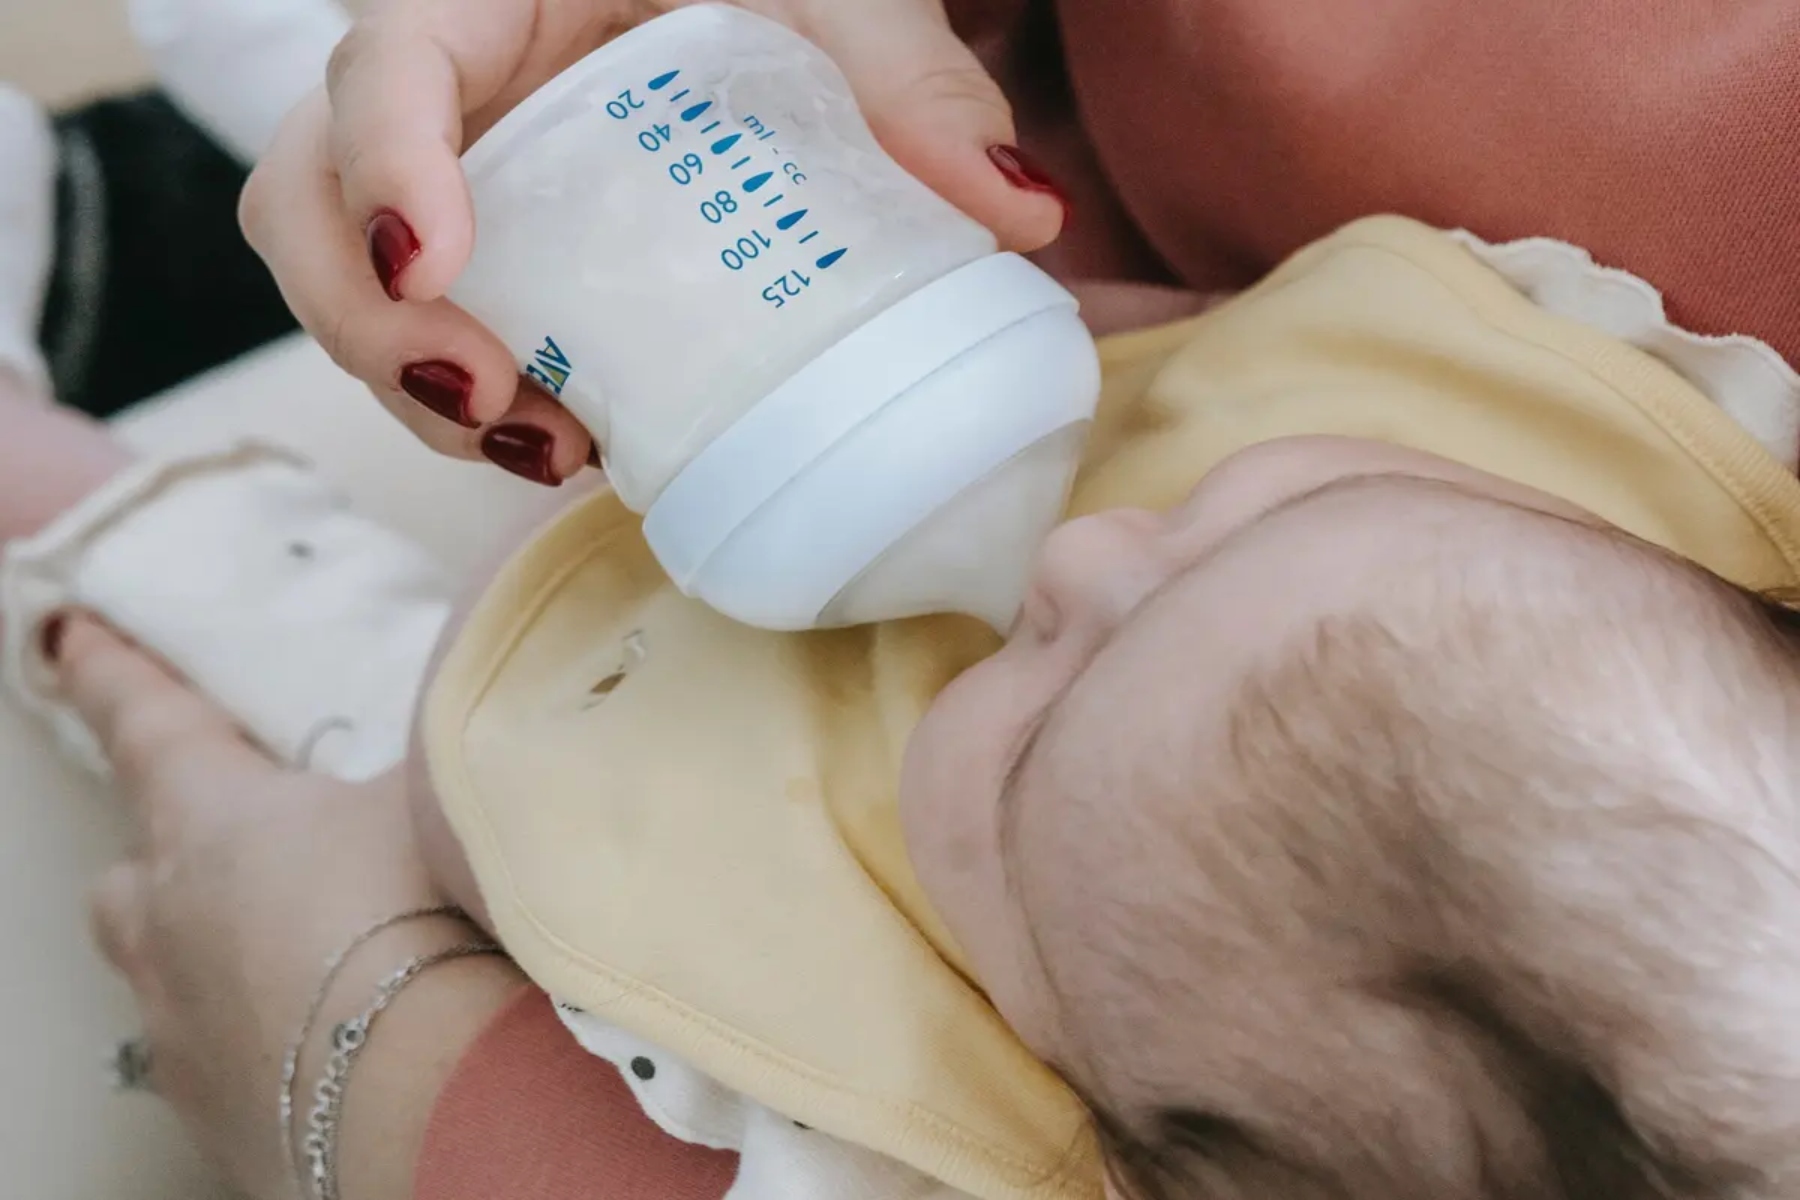 Μυο-Ινοσιτόλη: Το μόριο ζάχαρης που βρίσκεται στο μητρικό γάλα ενισχύει την υγεία του εγκεφάλου στα βρέφη